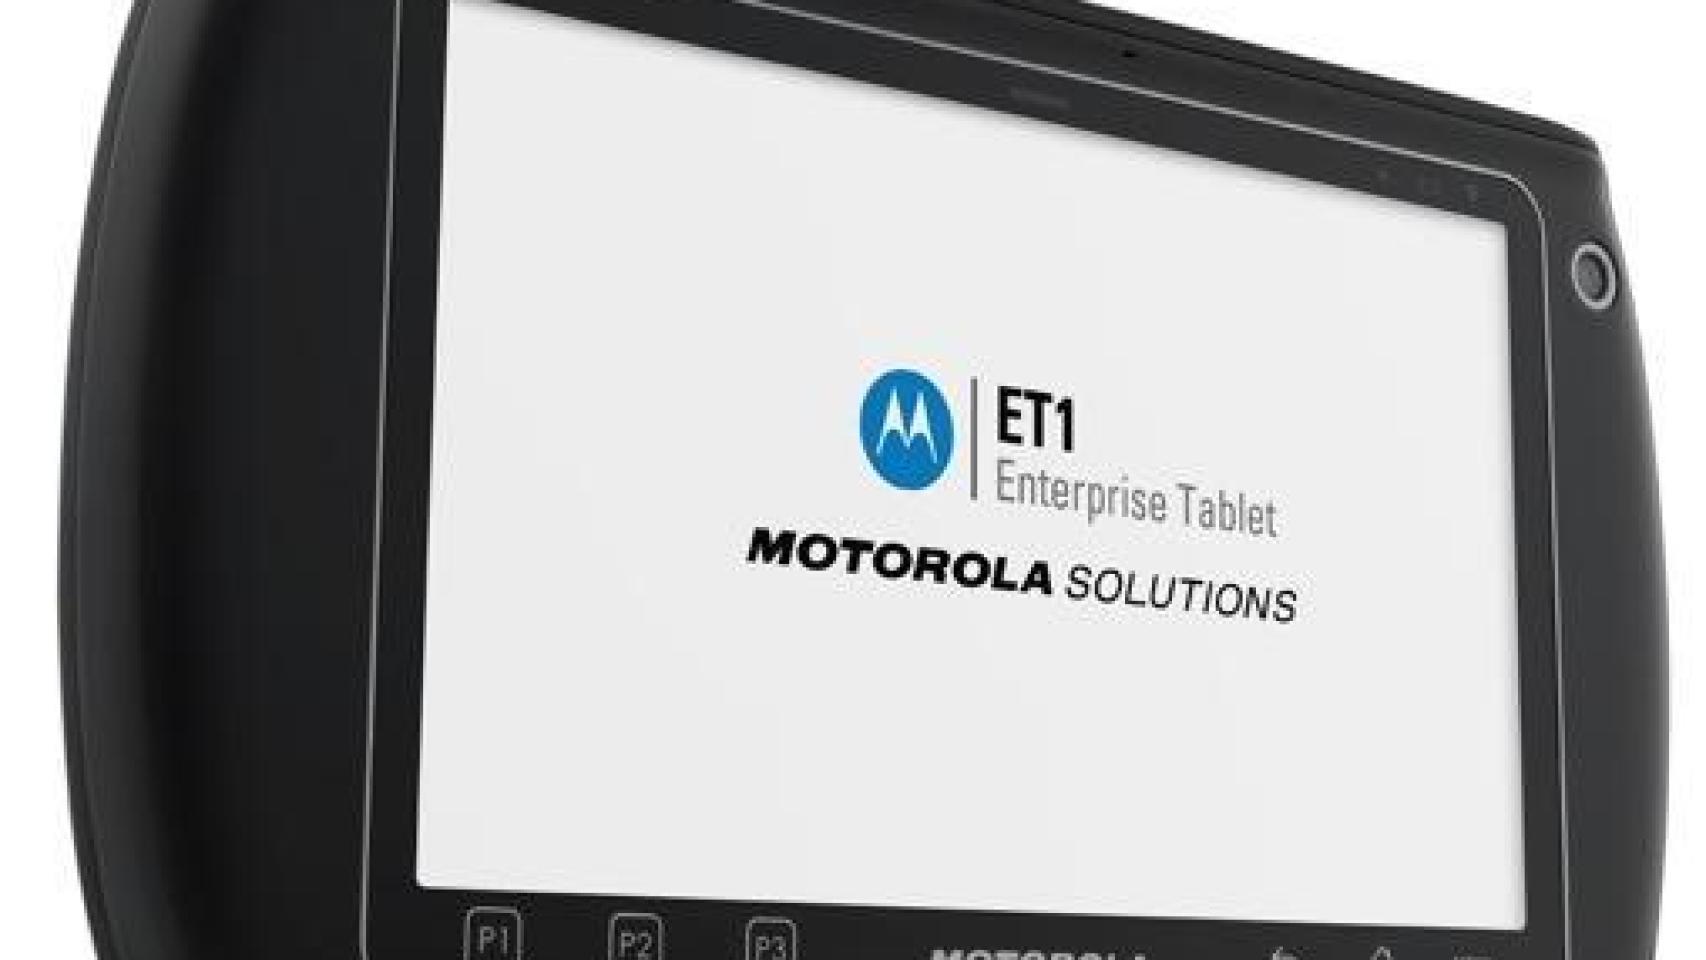 Motorola presenta su nueva tablet ET1 reforzada con goma